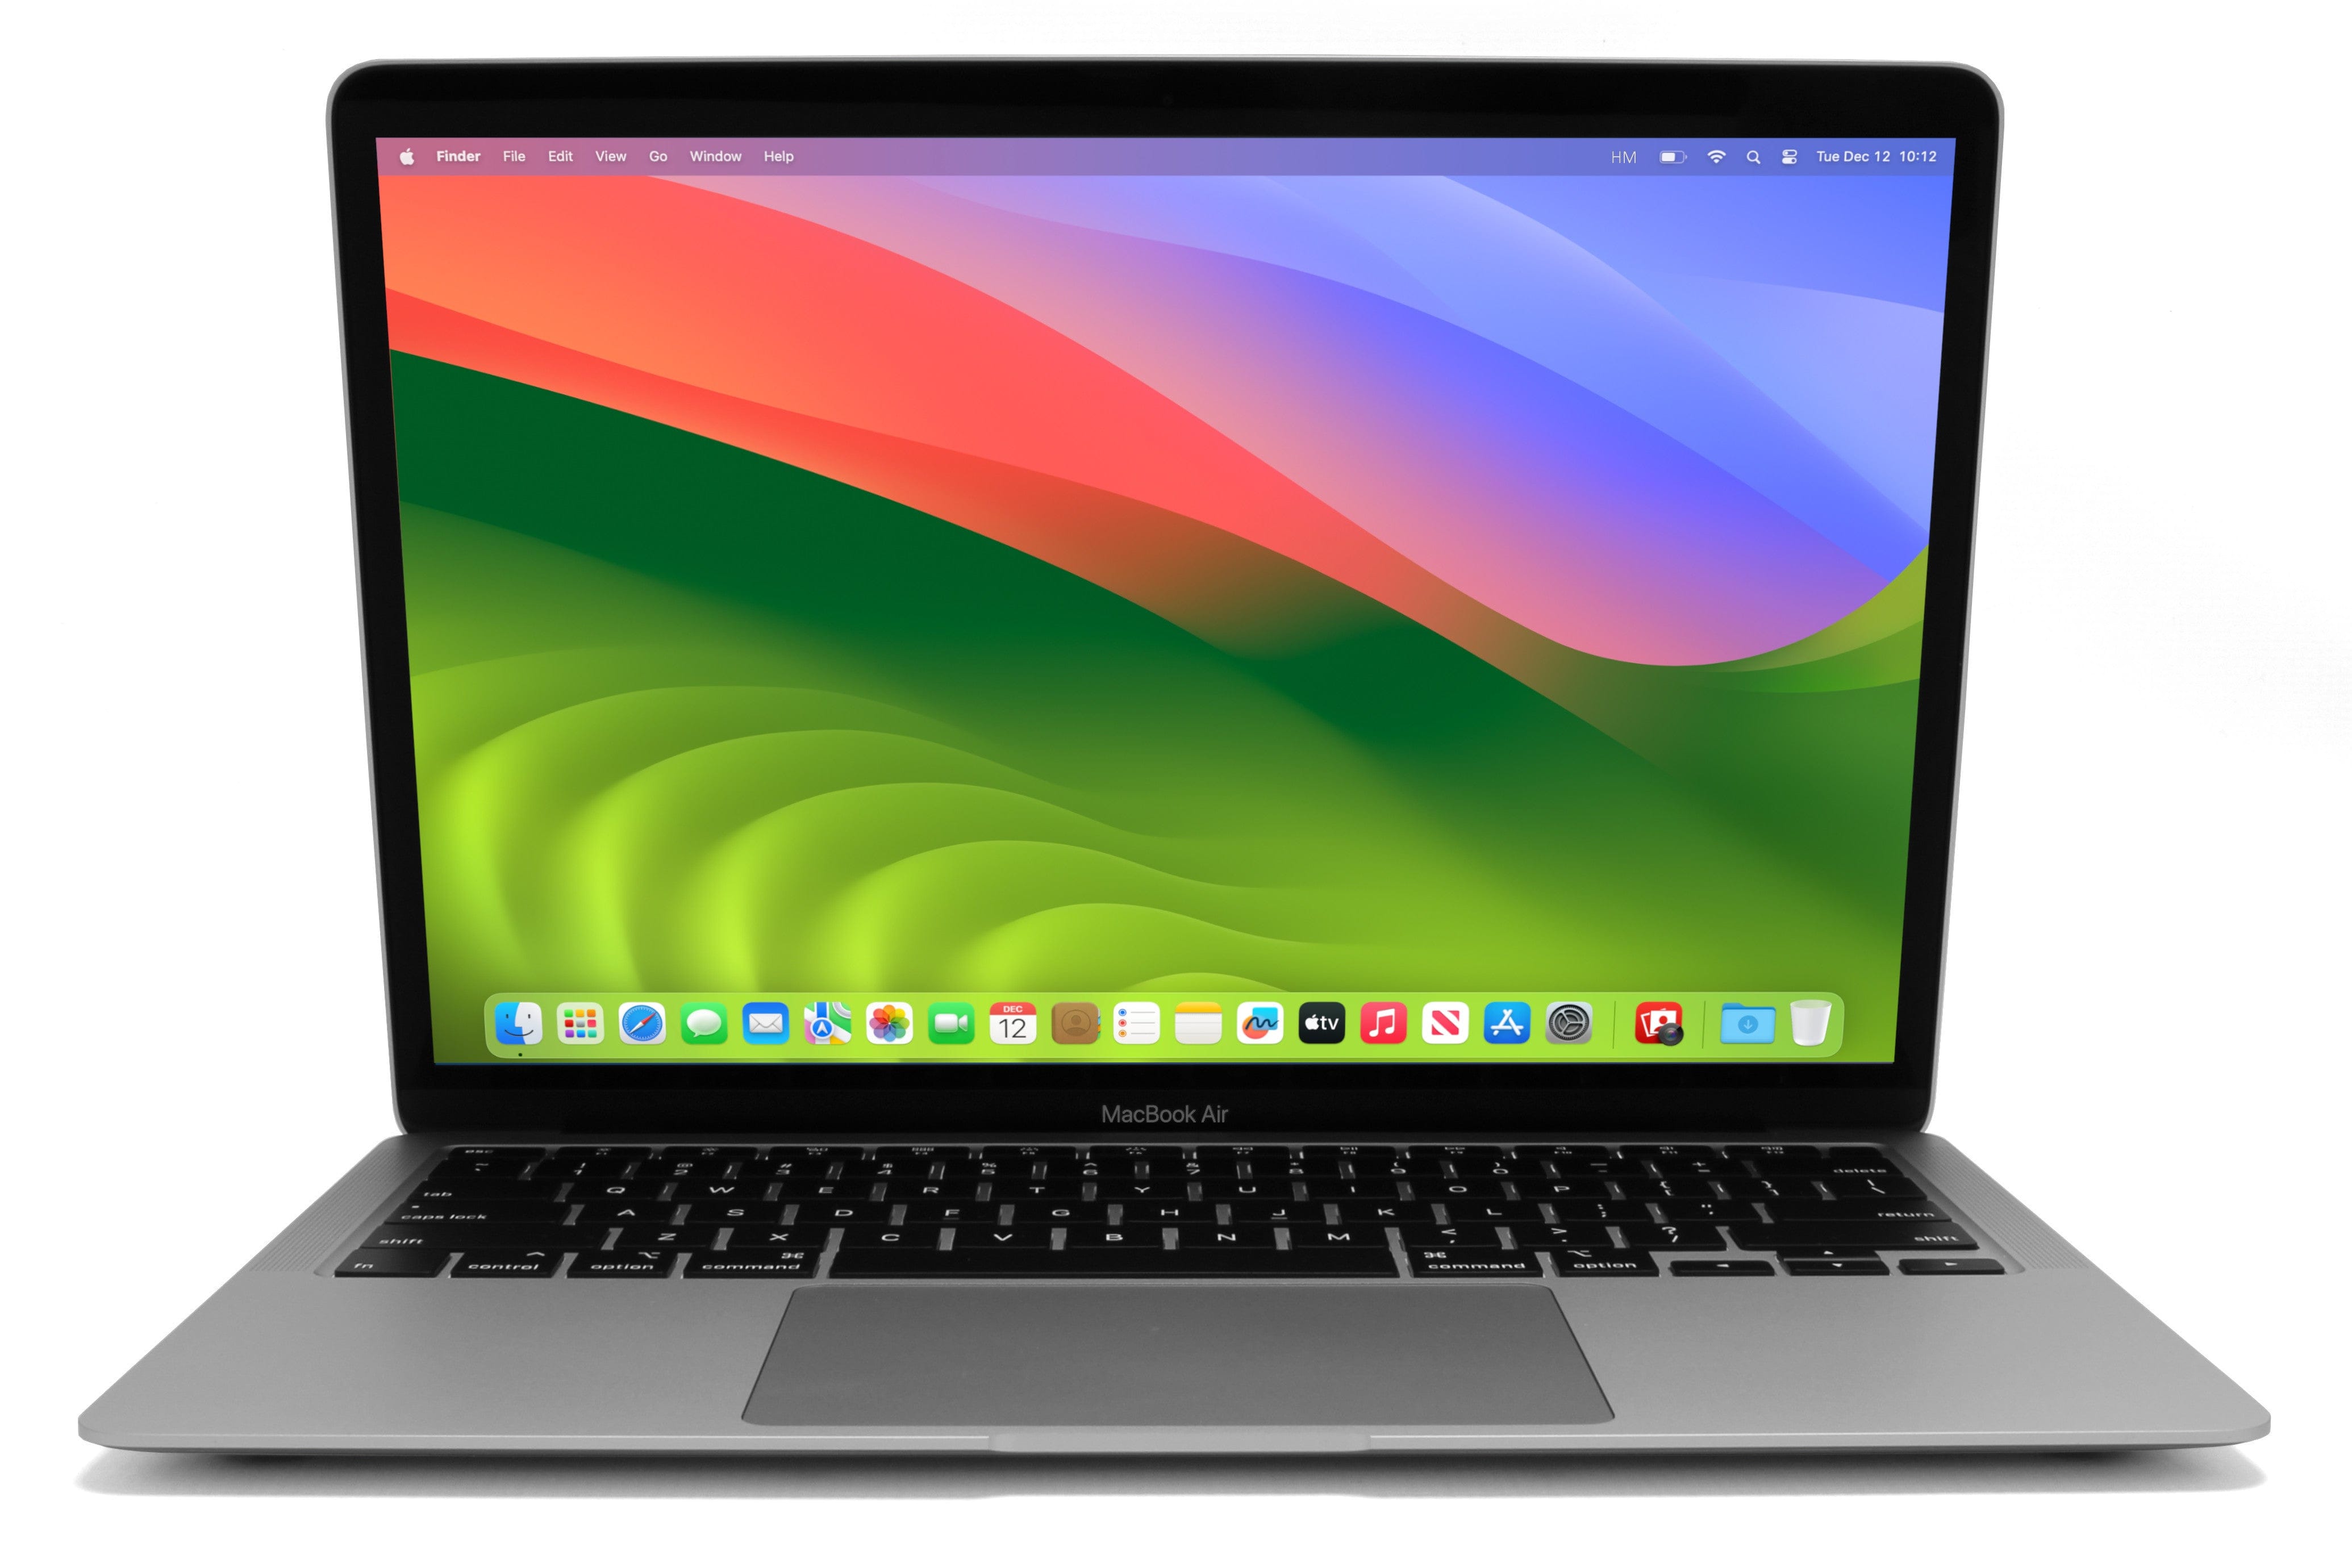 Apple MacBook Air 13-inch Core i3 1.1GHz (Silver, 2020) – Fair 